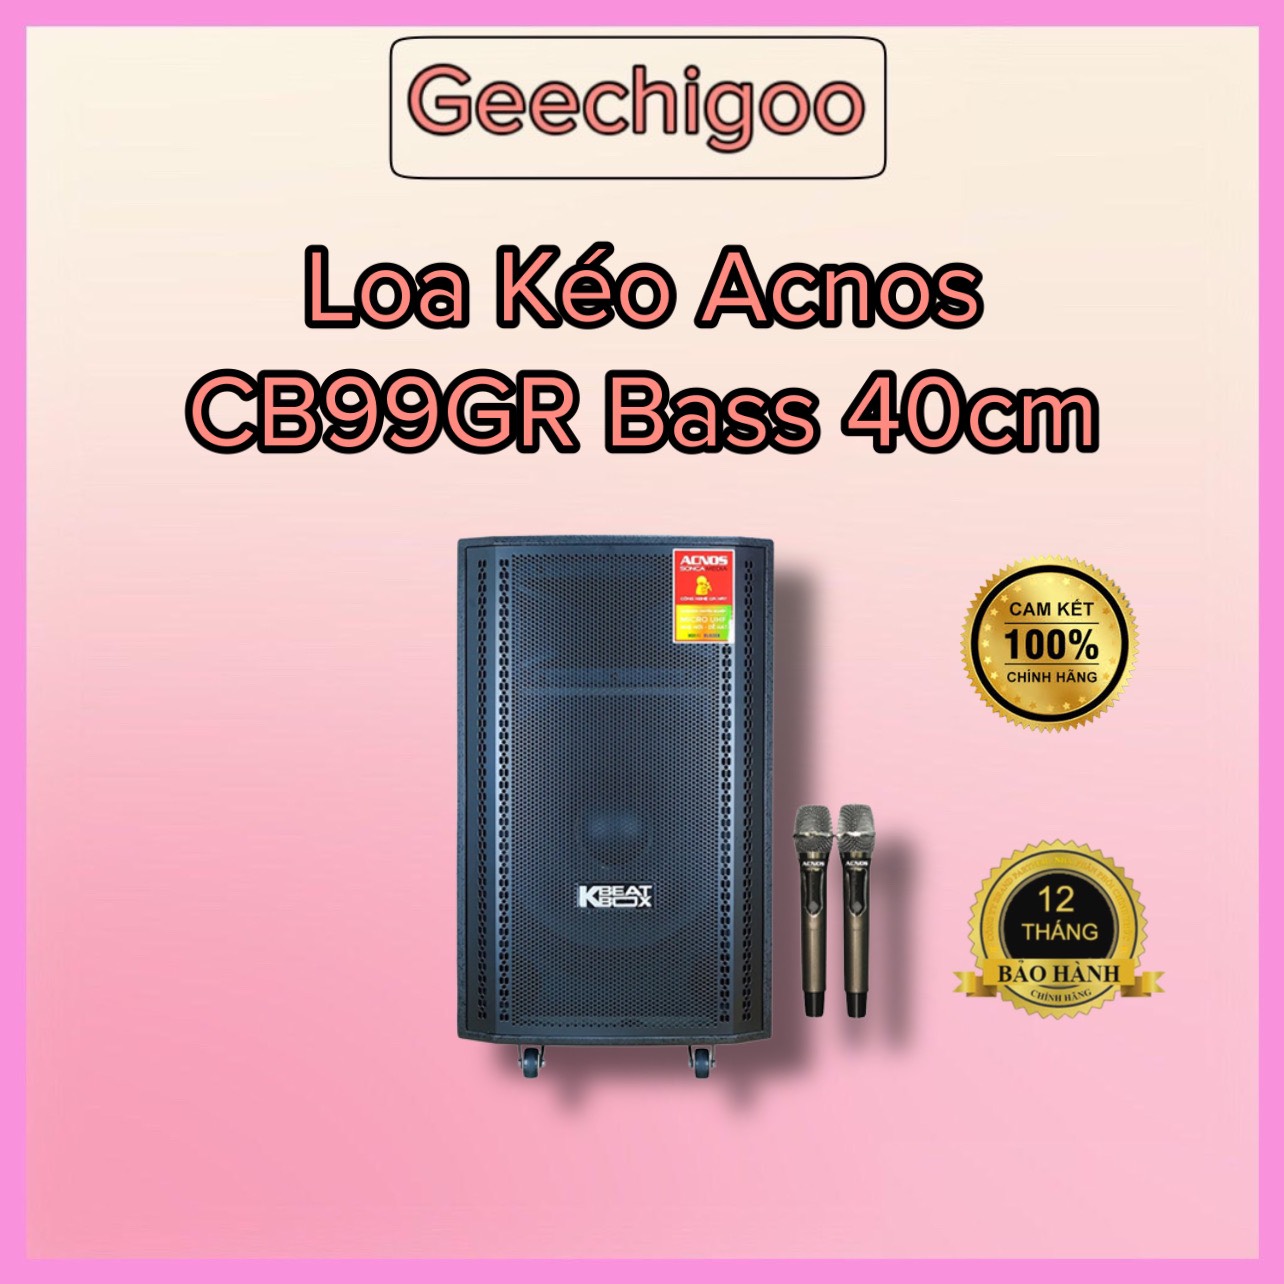 Loa kéo Acnos CB99GR Bass 40cm